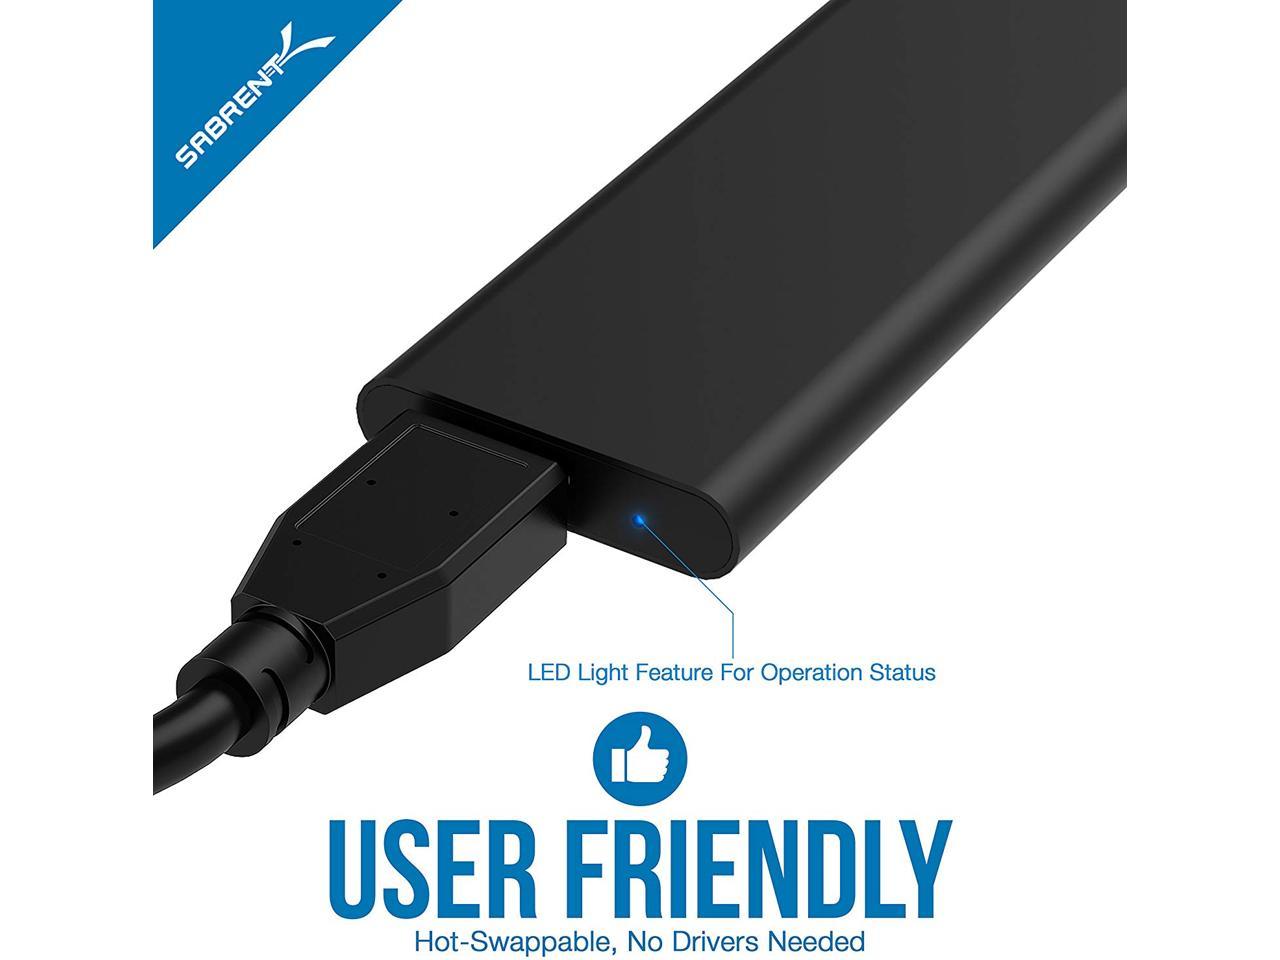 Sabrent M.2 SSD to USB 3.0 Aluminum Enclosure Ec-M2MC NGFF